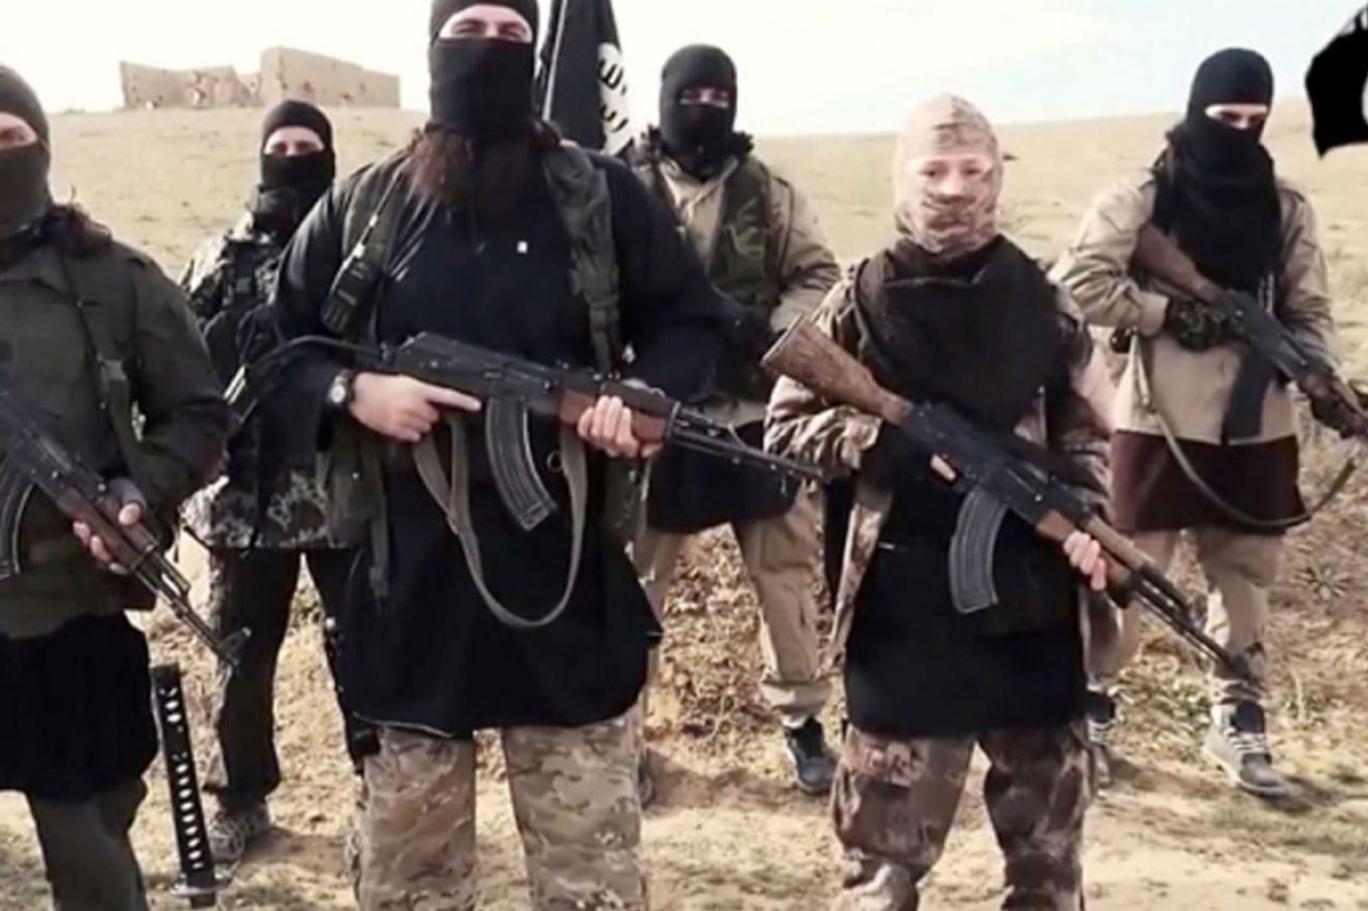 IŞİD, ramazan ayında “daha fazla saldırı” çağrısı yaptı